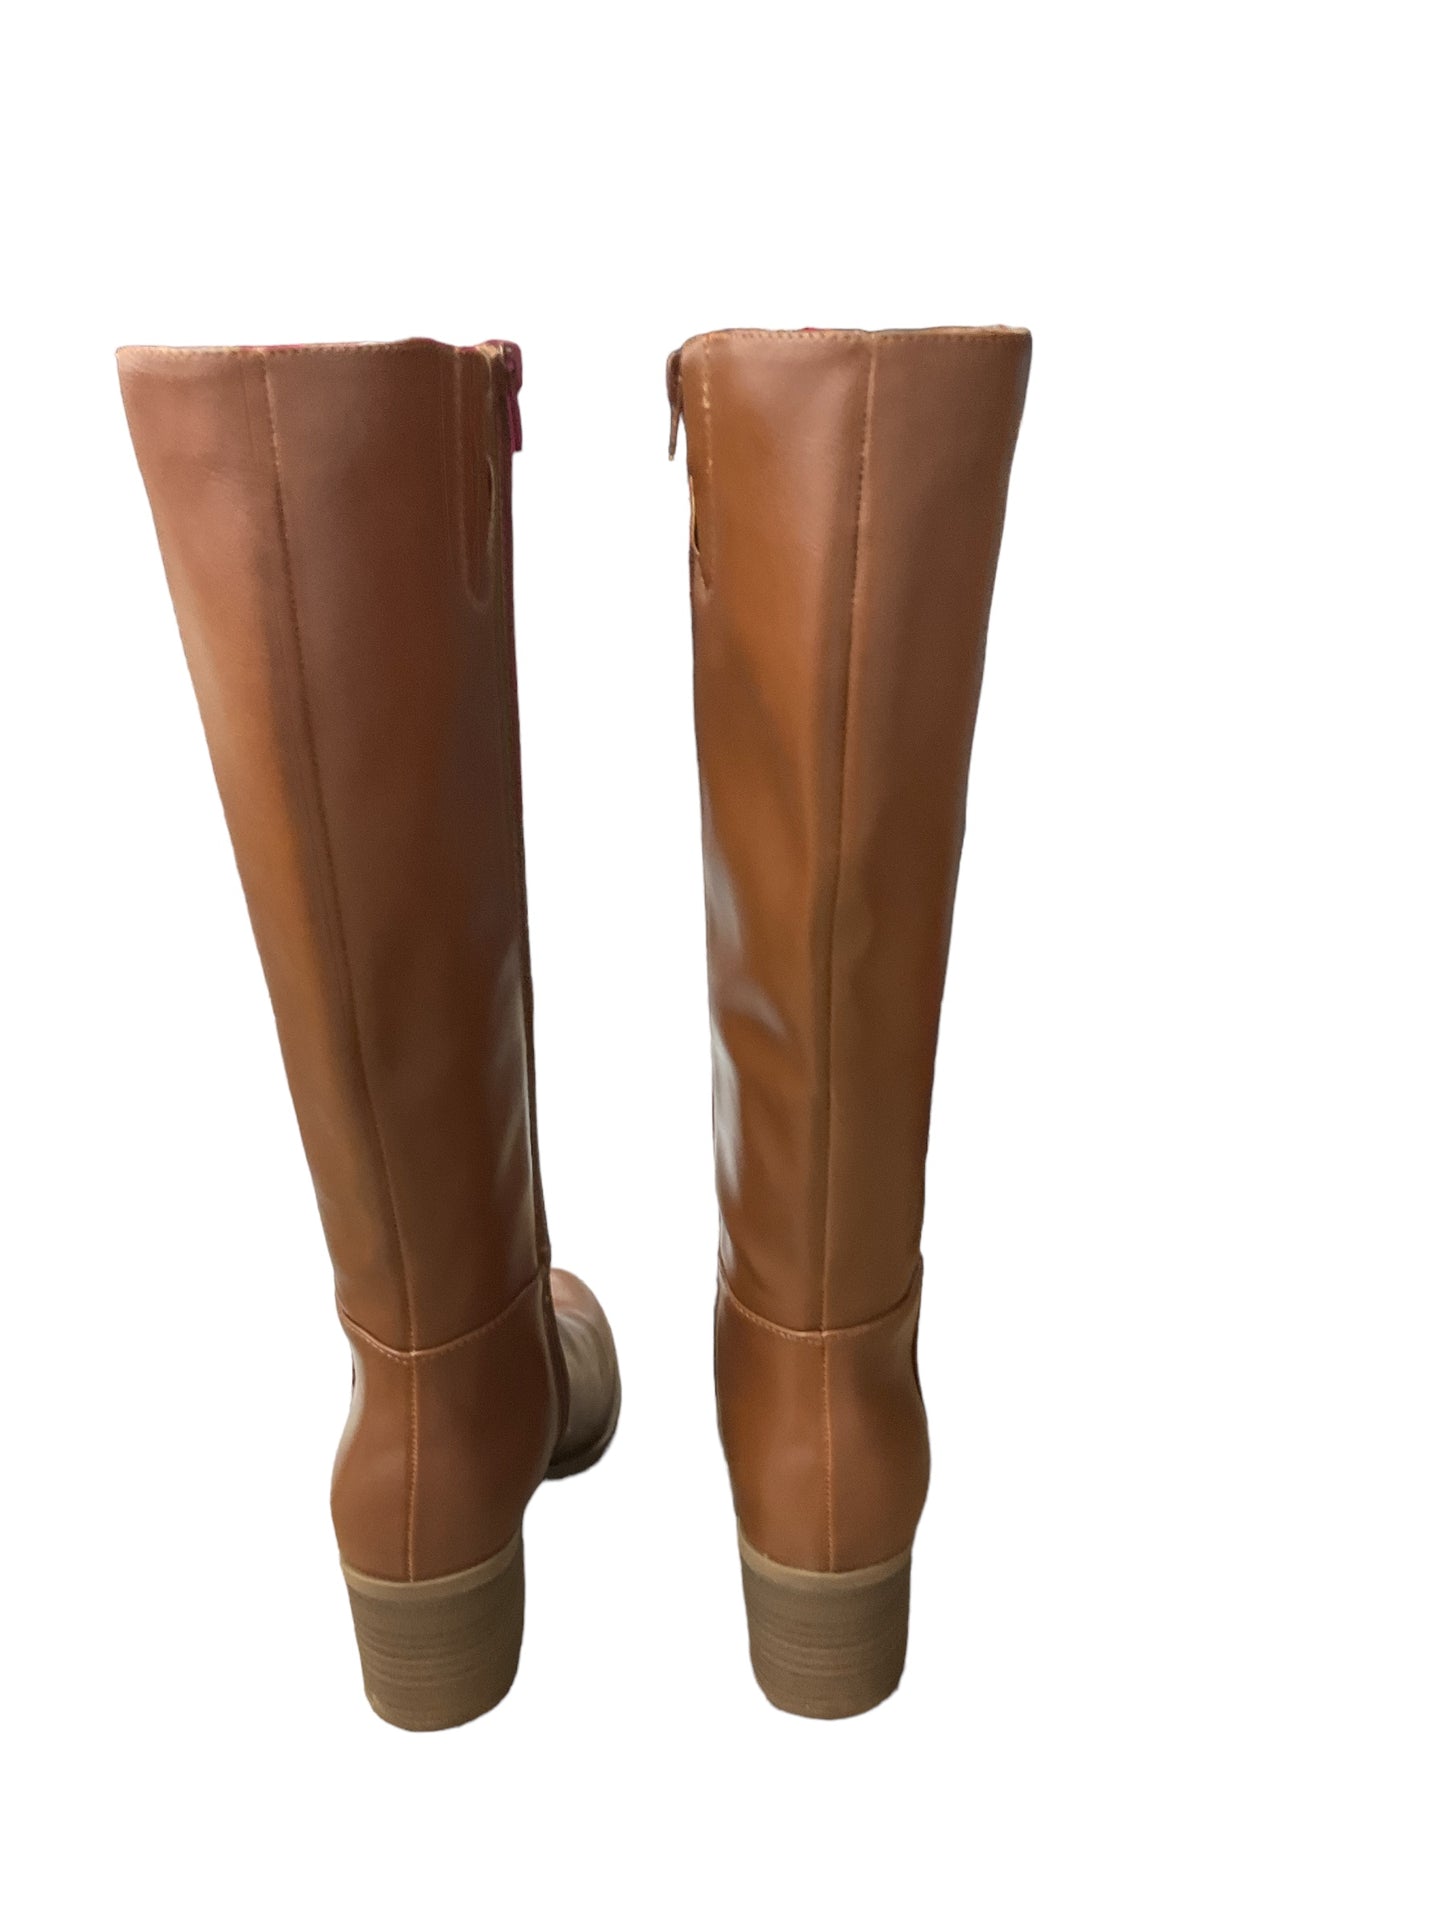 Boots Knee Heels By Lc Lauren Conrad  Size: 6